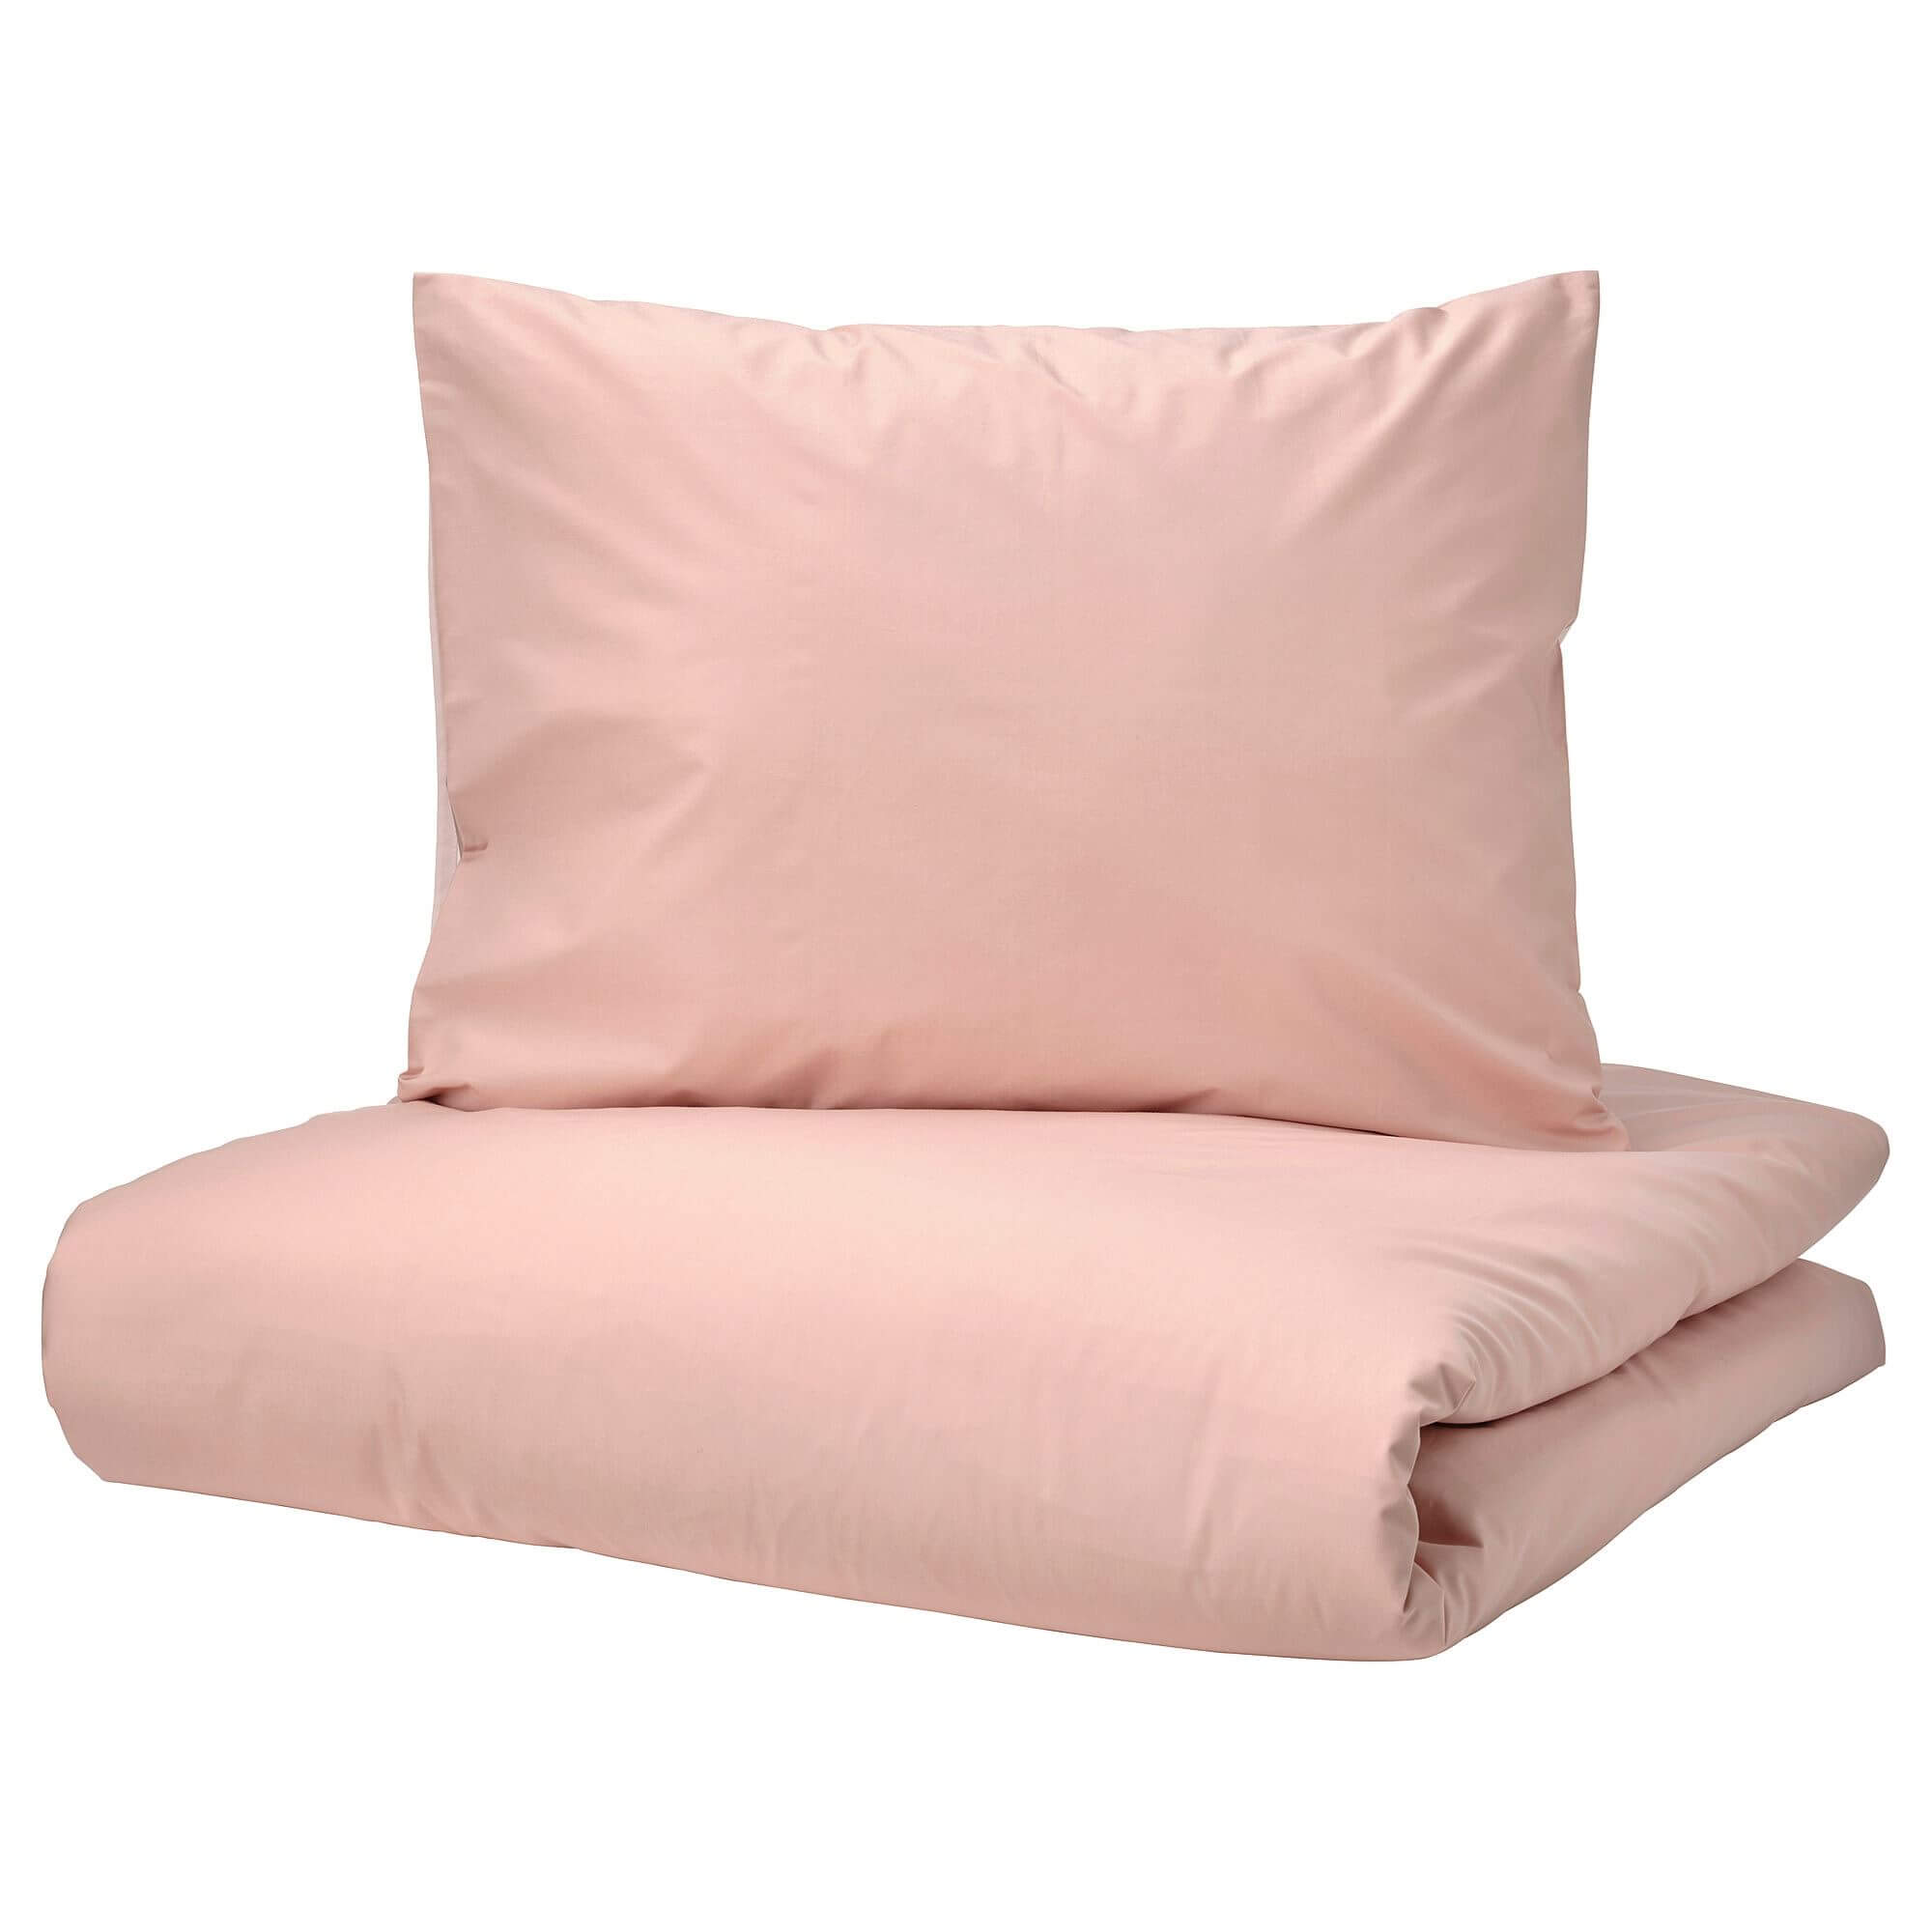 комплект постельного белья ikea blavinda 2 предмета серый Комплект постельного белья Ikea Strandtall, 3 предмета, розовый